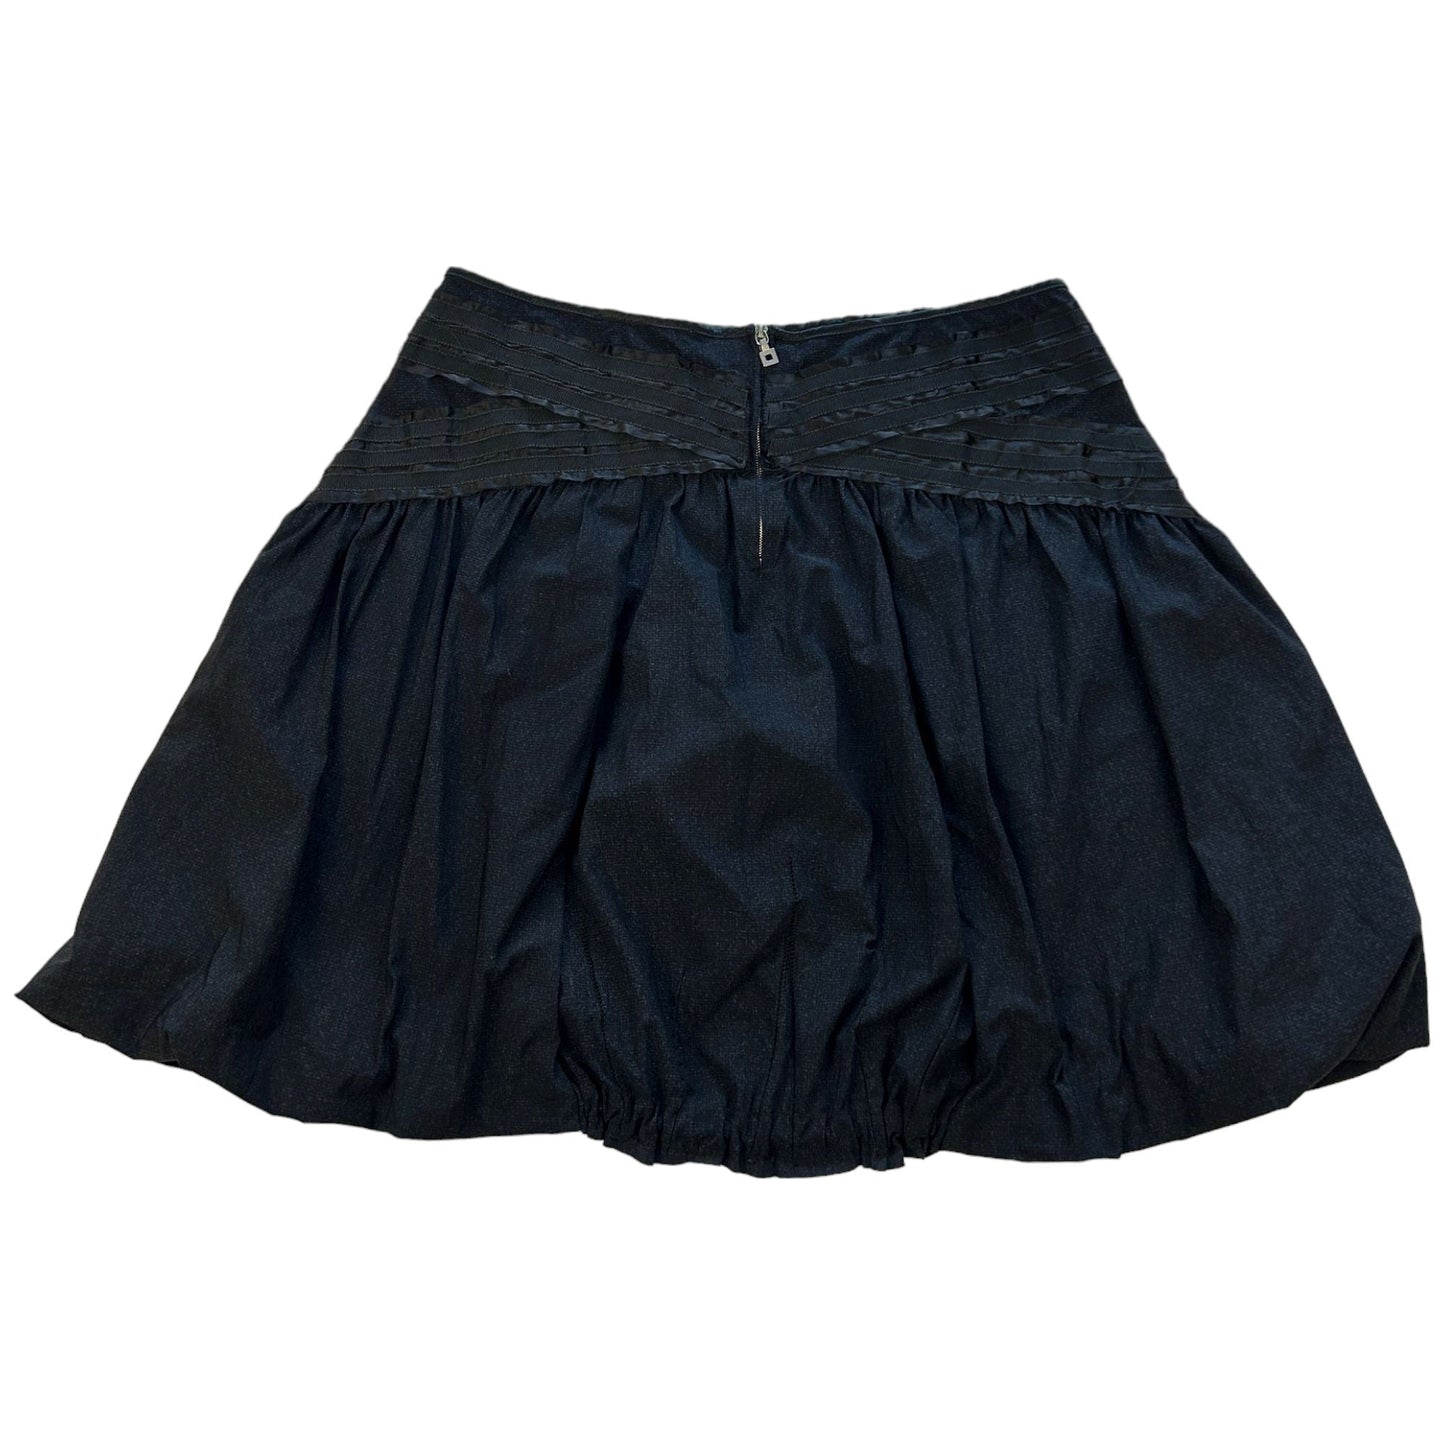 Vintage Marithé + François Girbaud Embellished Skirt Size W32